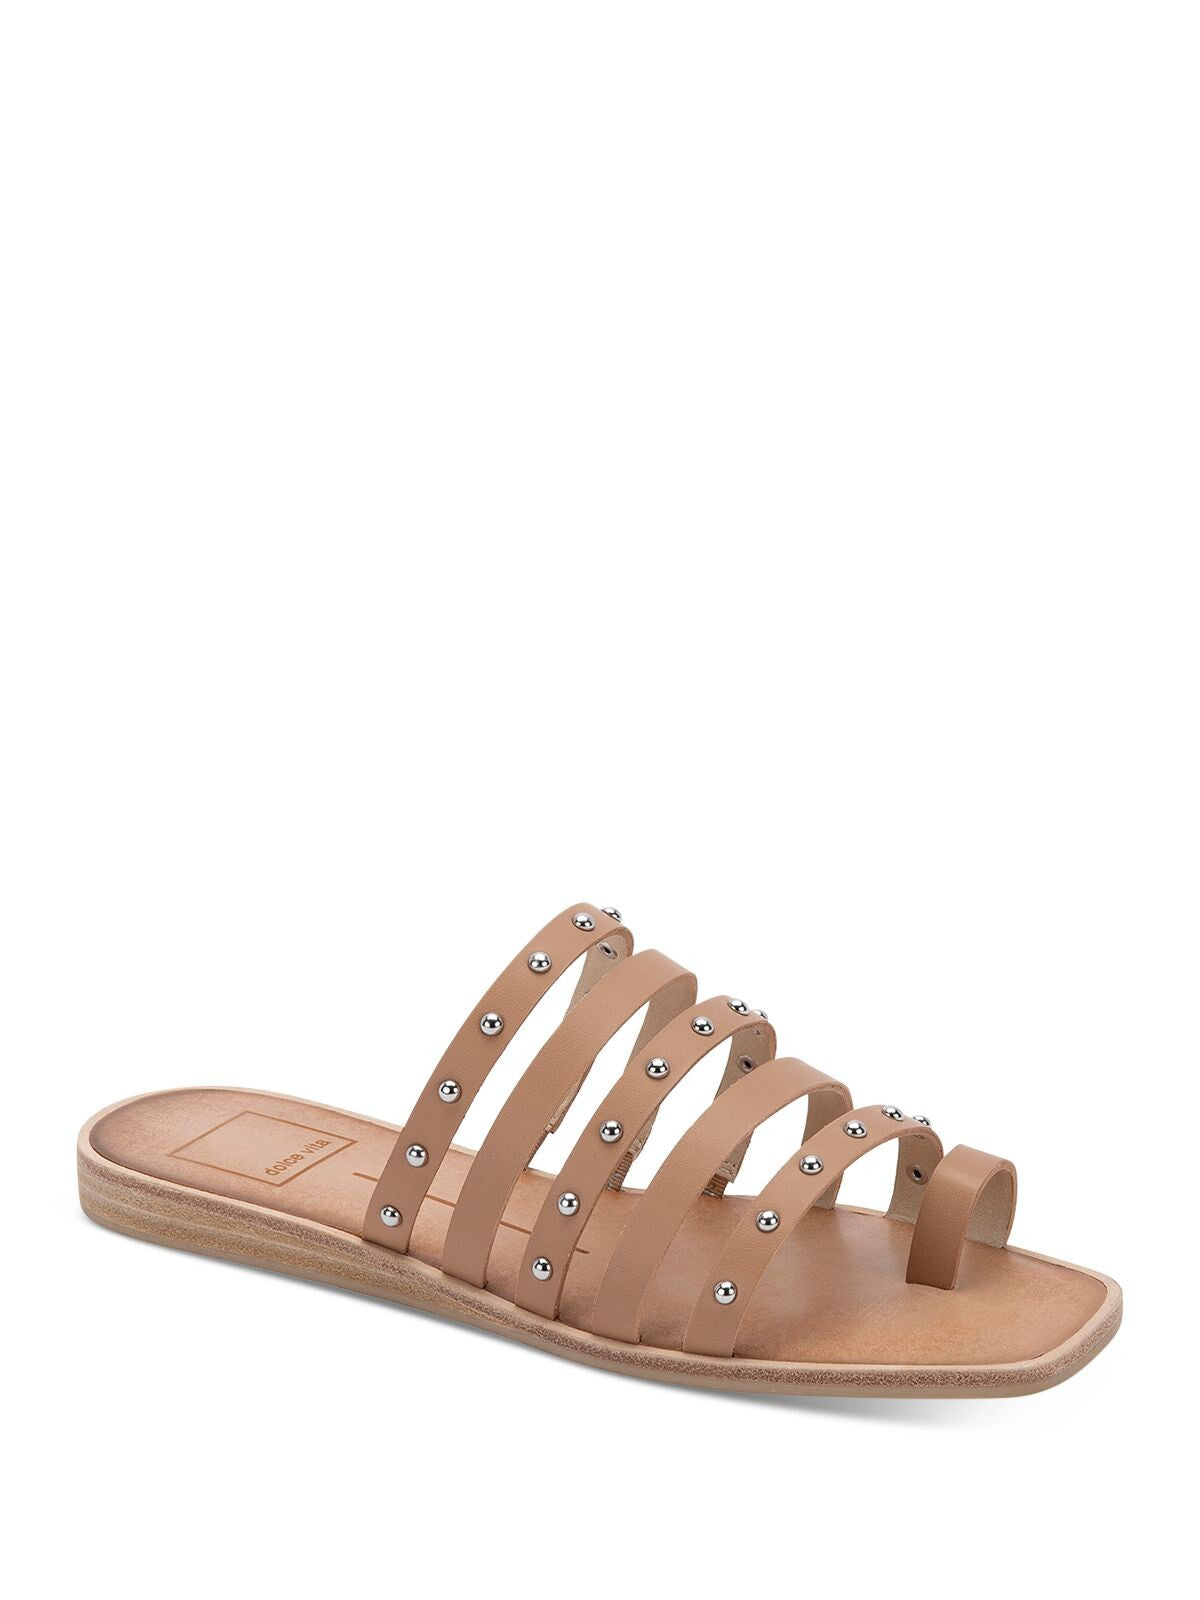 DOLCE VITA Womens Beige Toe-Loop Kaylee Square Toe Block Heel Slip On Slide Sandals Shoes 7 M